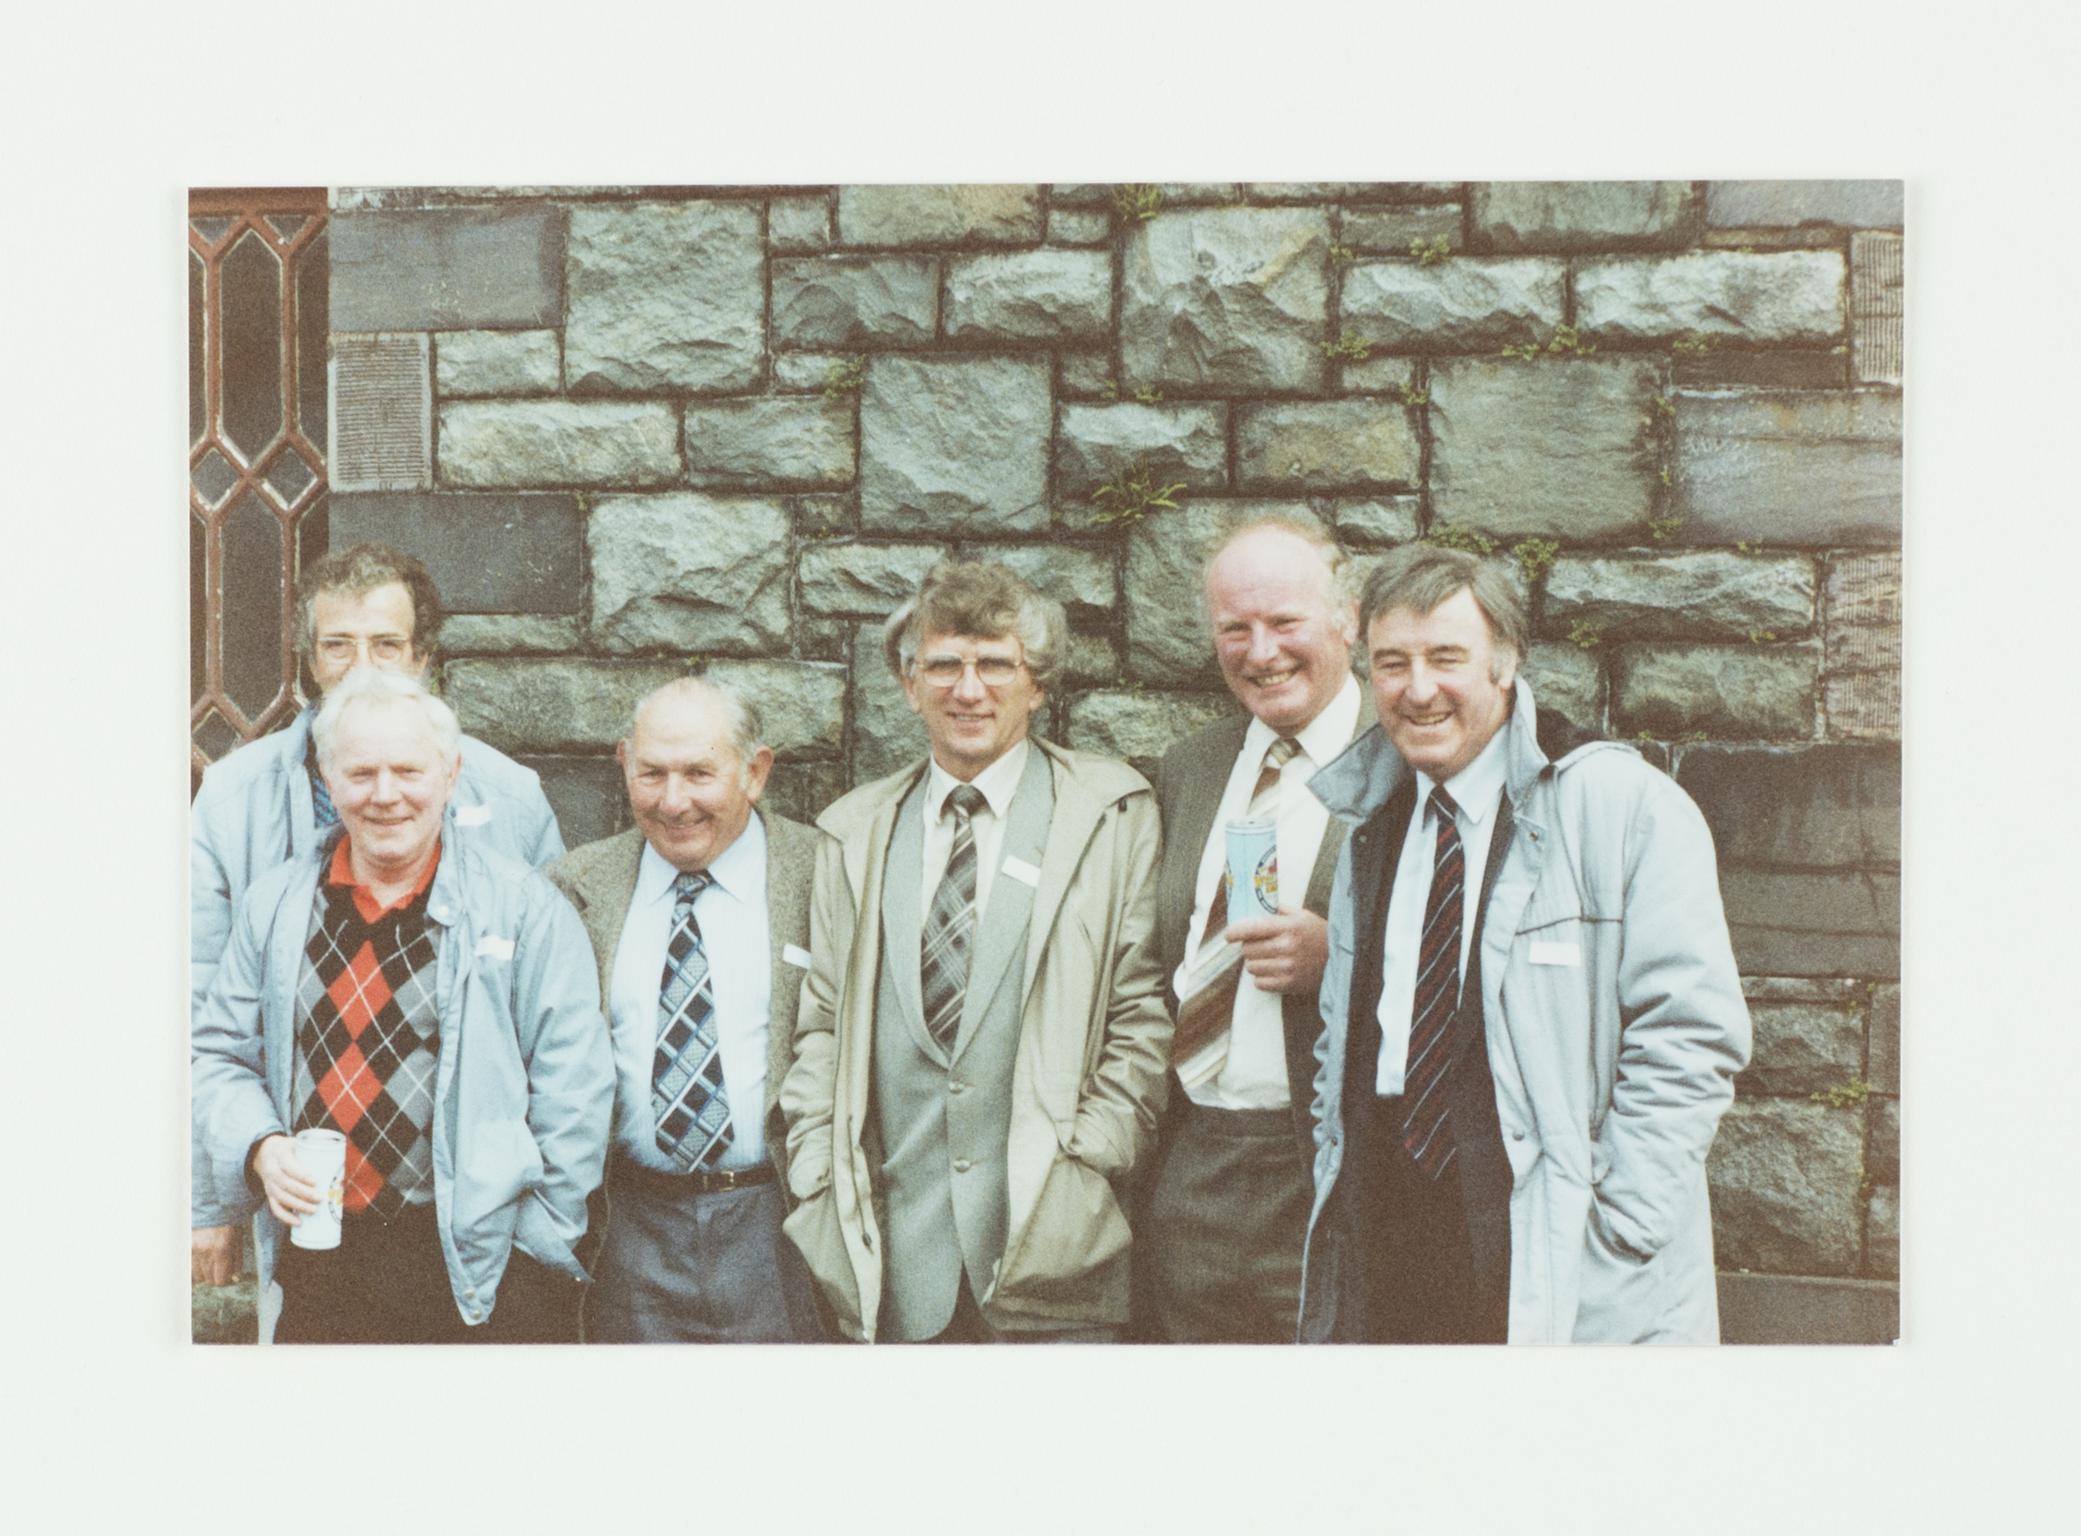 Dinorwig slate quarry reunion 1994, photograph